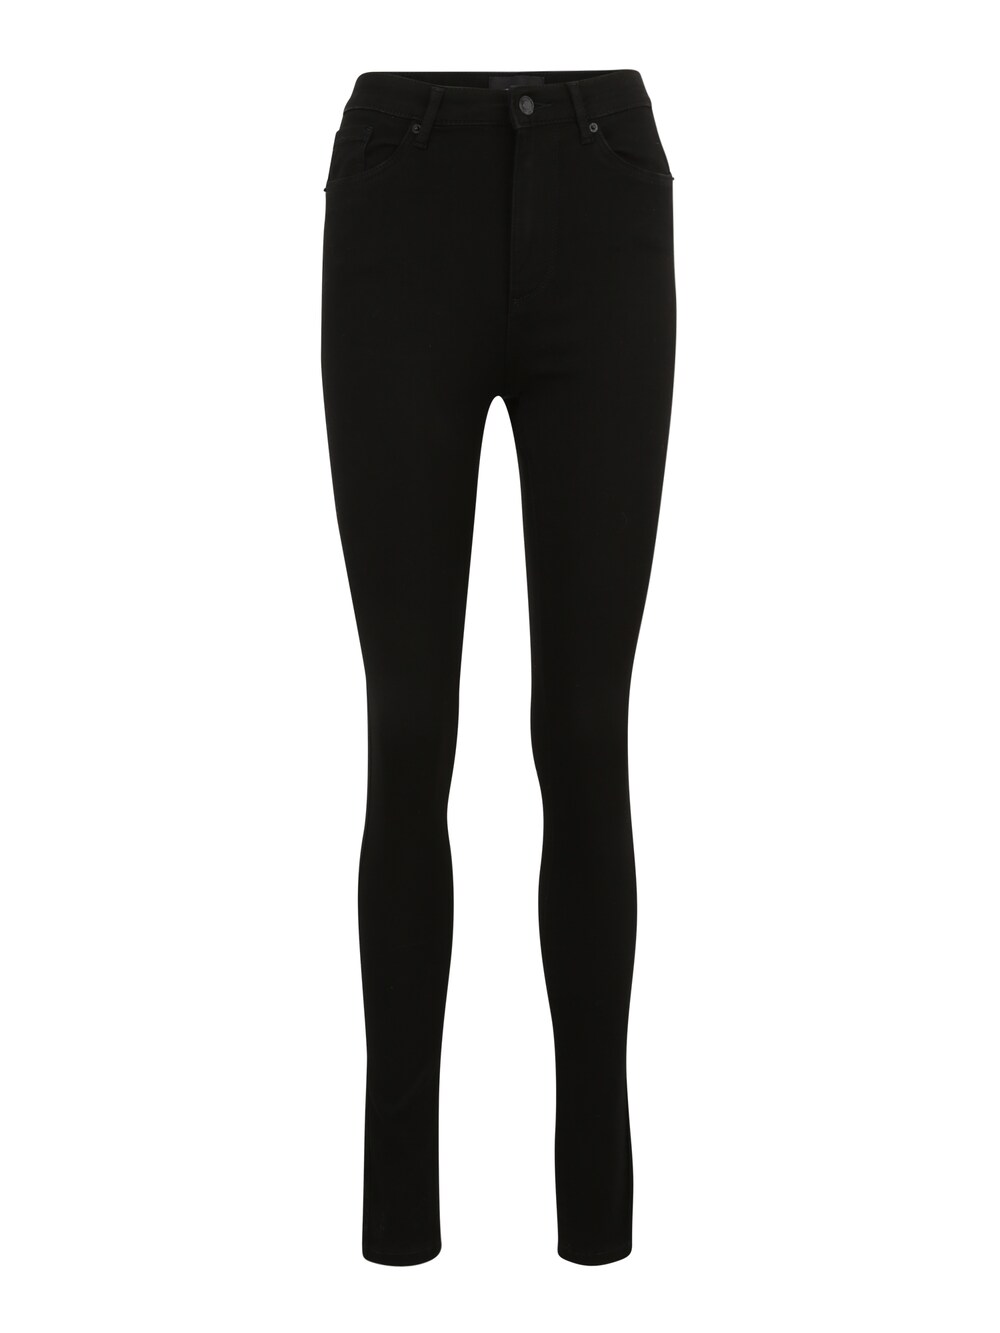 Узкие джинсы Vero Moda Sophia, черный блузка sophia с цветочным принтом vero moda черный